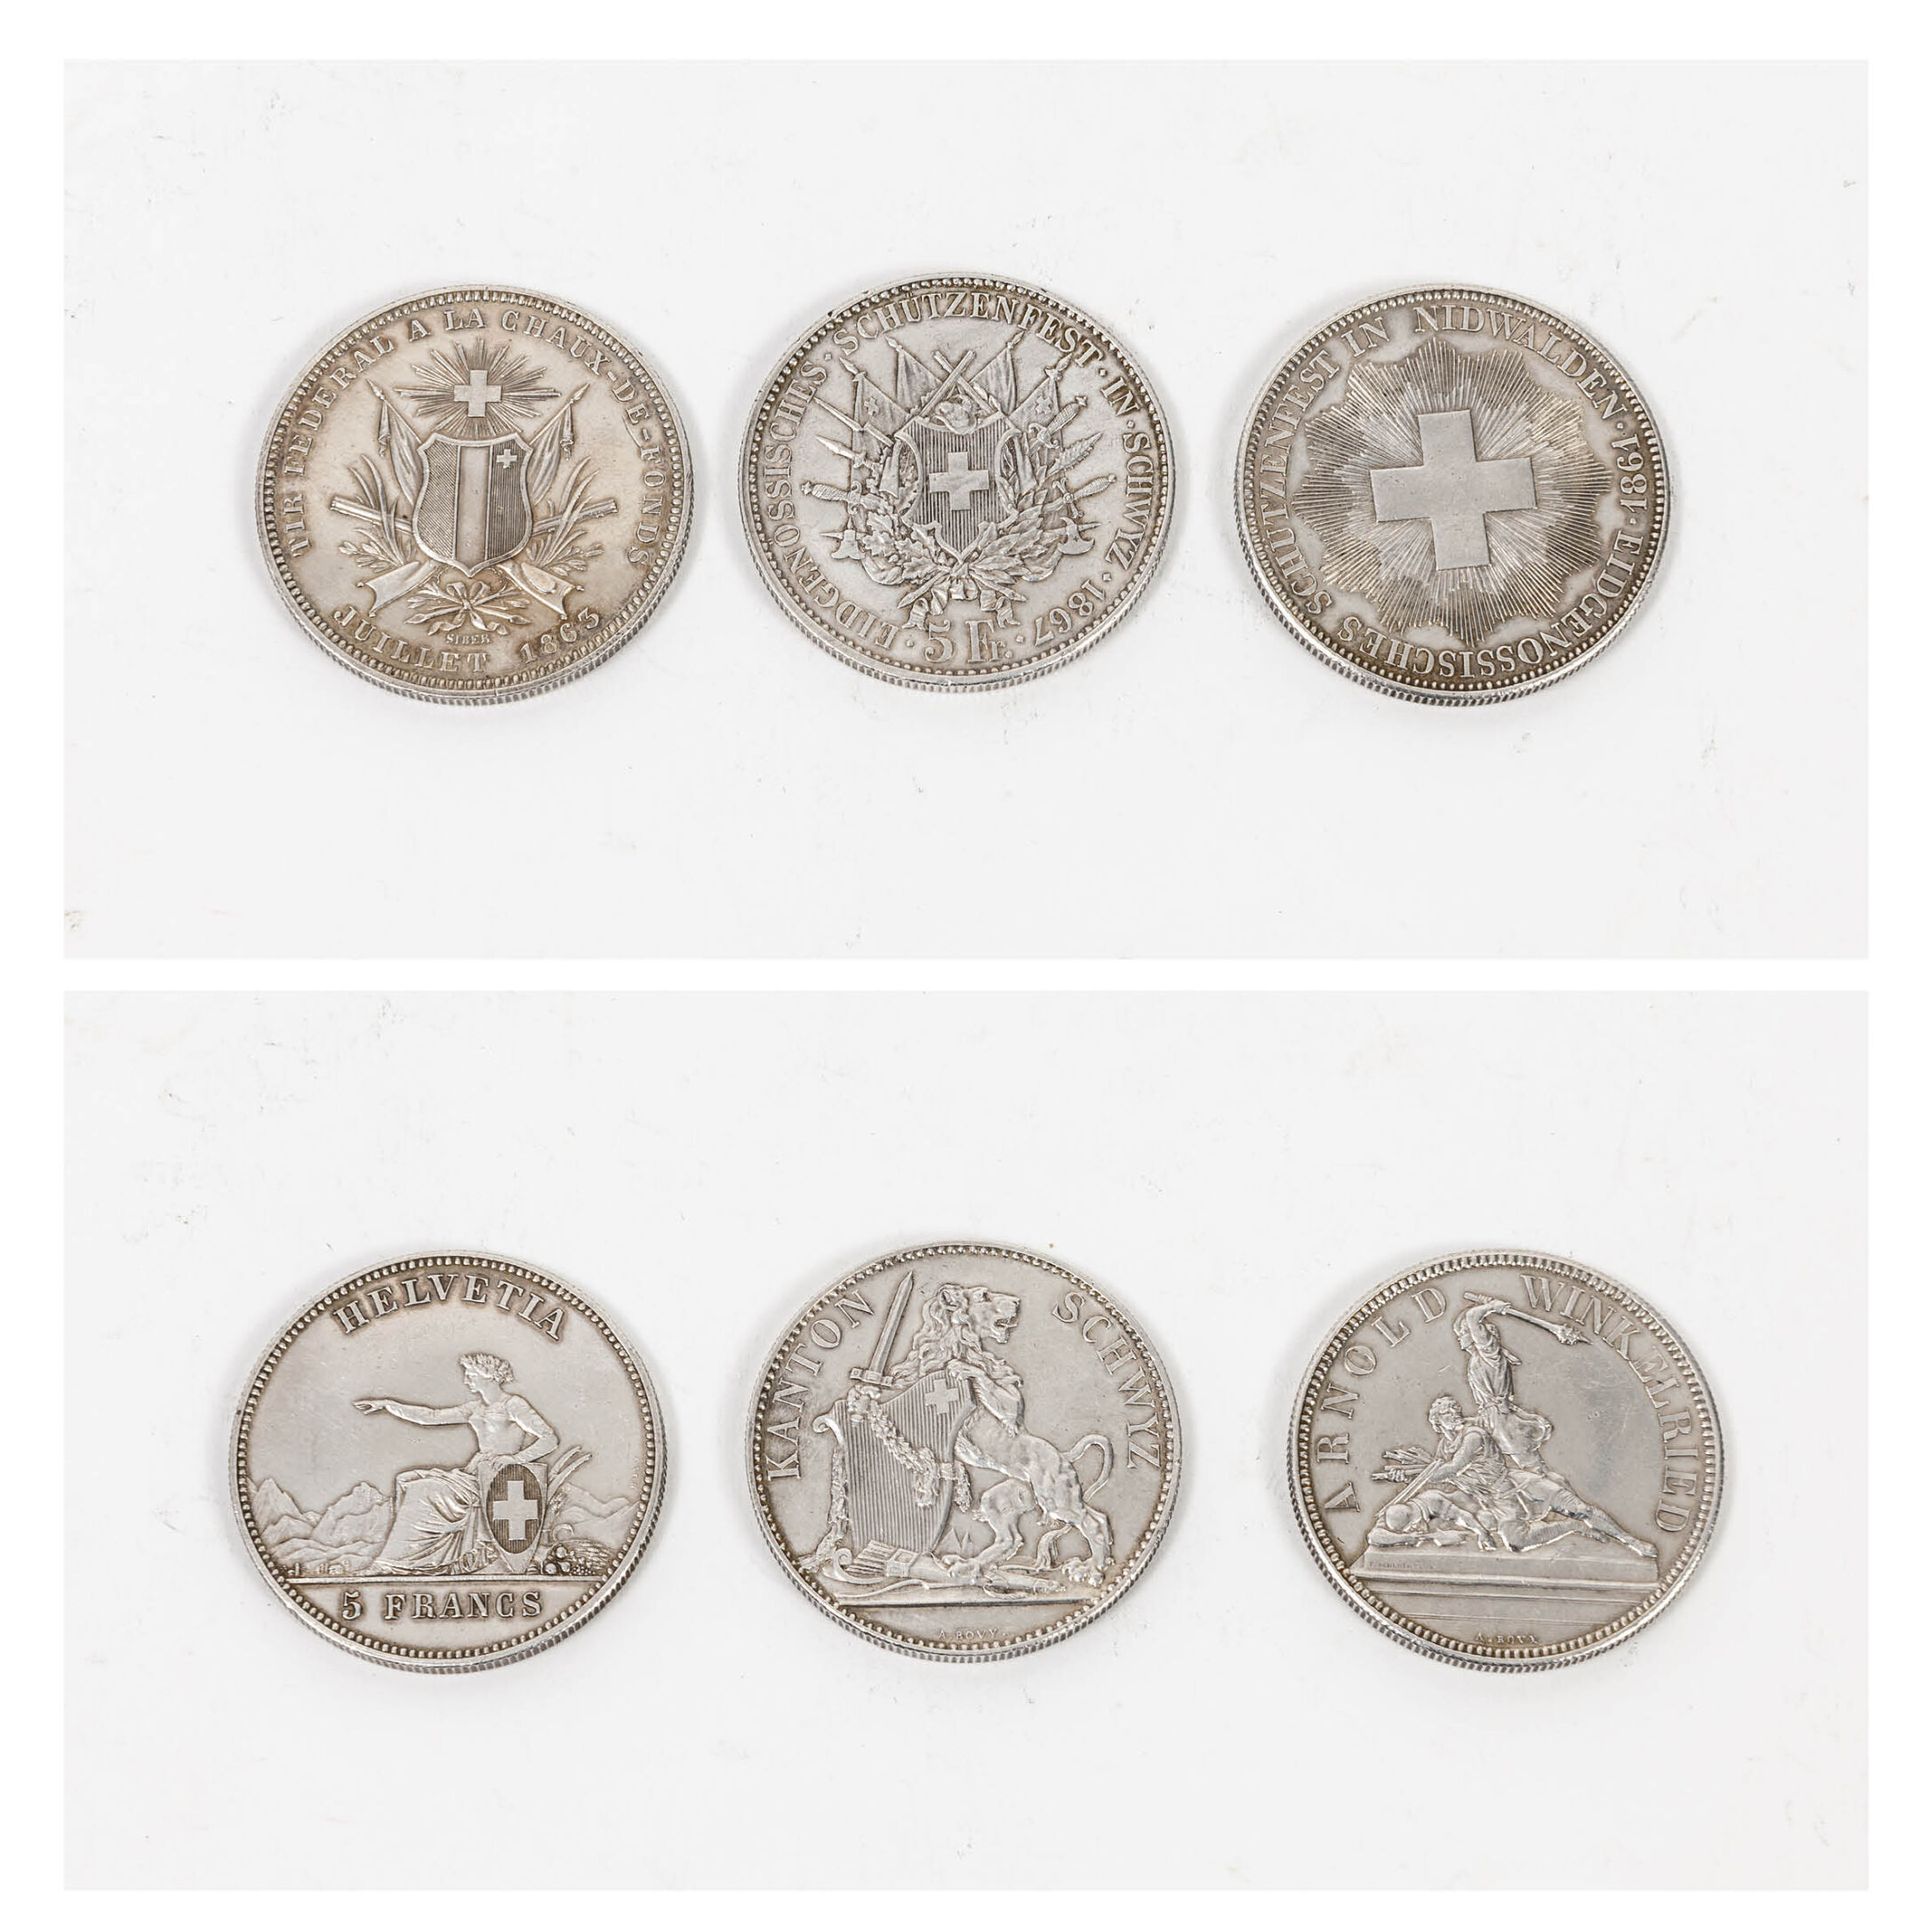 SUISSE 5法郎 发行量：3份

尼德瓦尔登1861年。- 拉夏德芳1863年。- 施维茨1867年。

总重量：75克。

这3枚硬币。